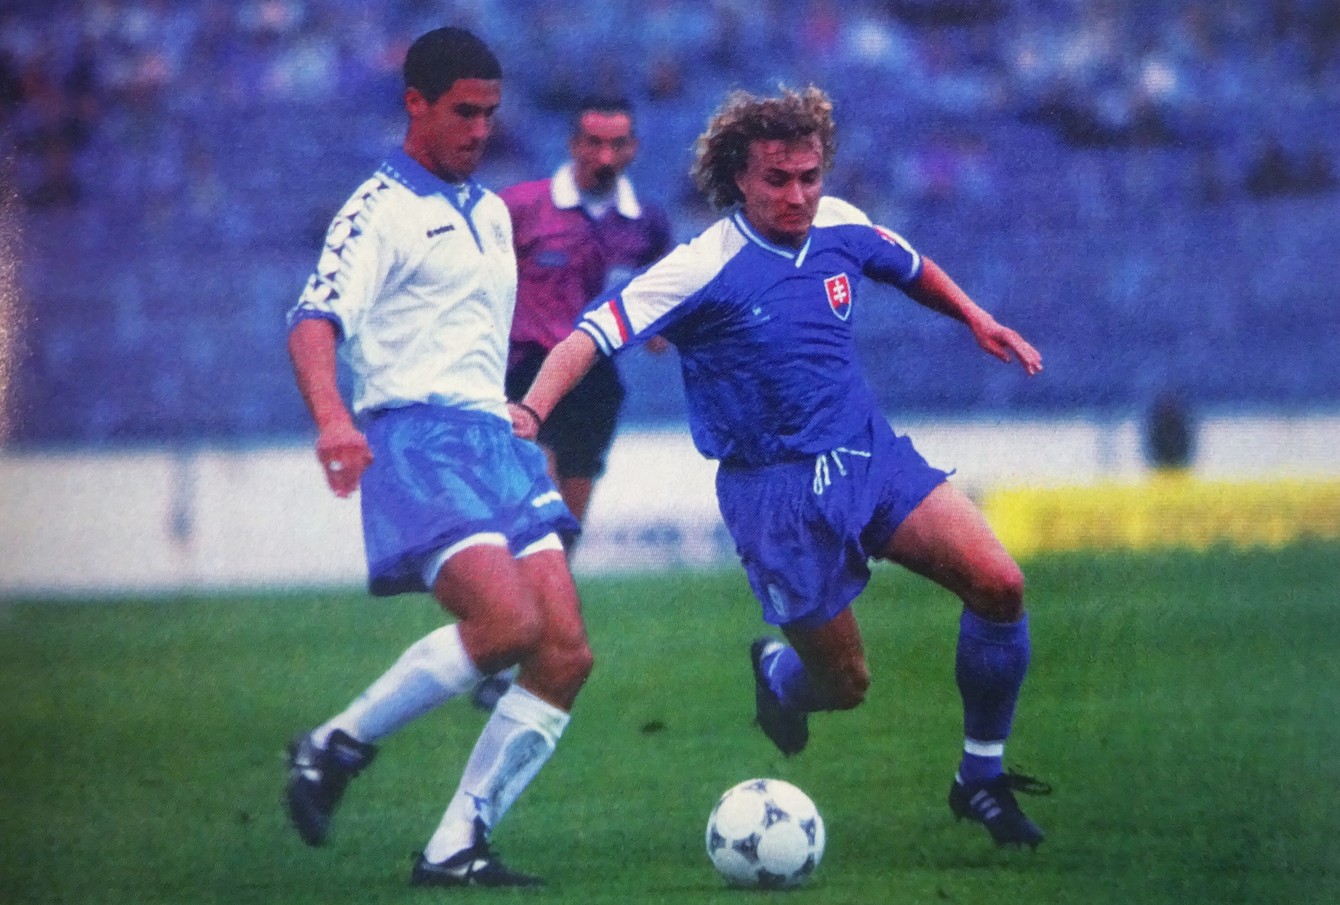 6. septembra 1995 skóroval Tibor Jančula na košickom štadióne v druhom reprezentačnom zápase svoj druhý reprezentačný gól (Slovensko - Izrael 1:0).